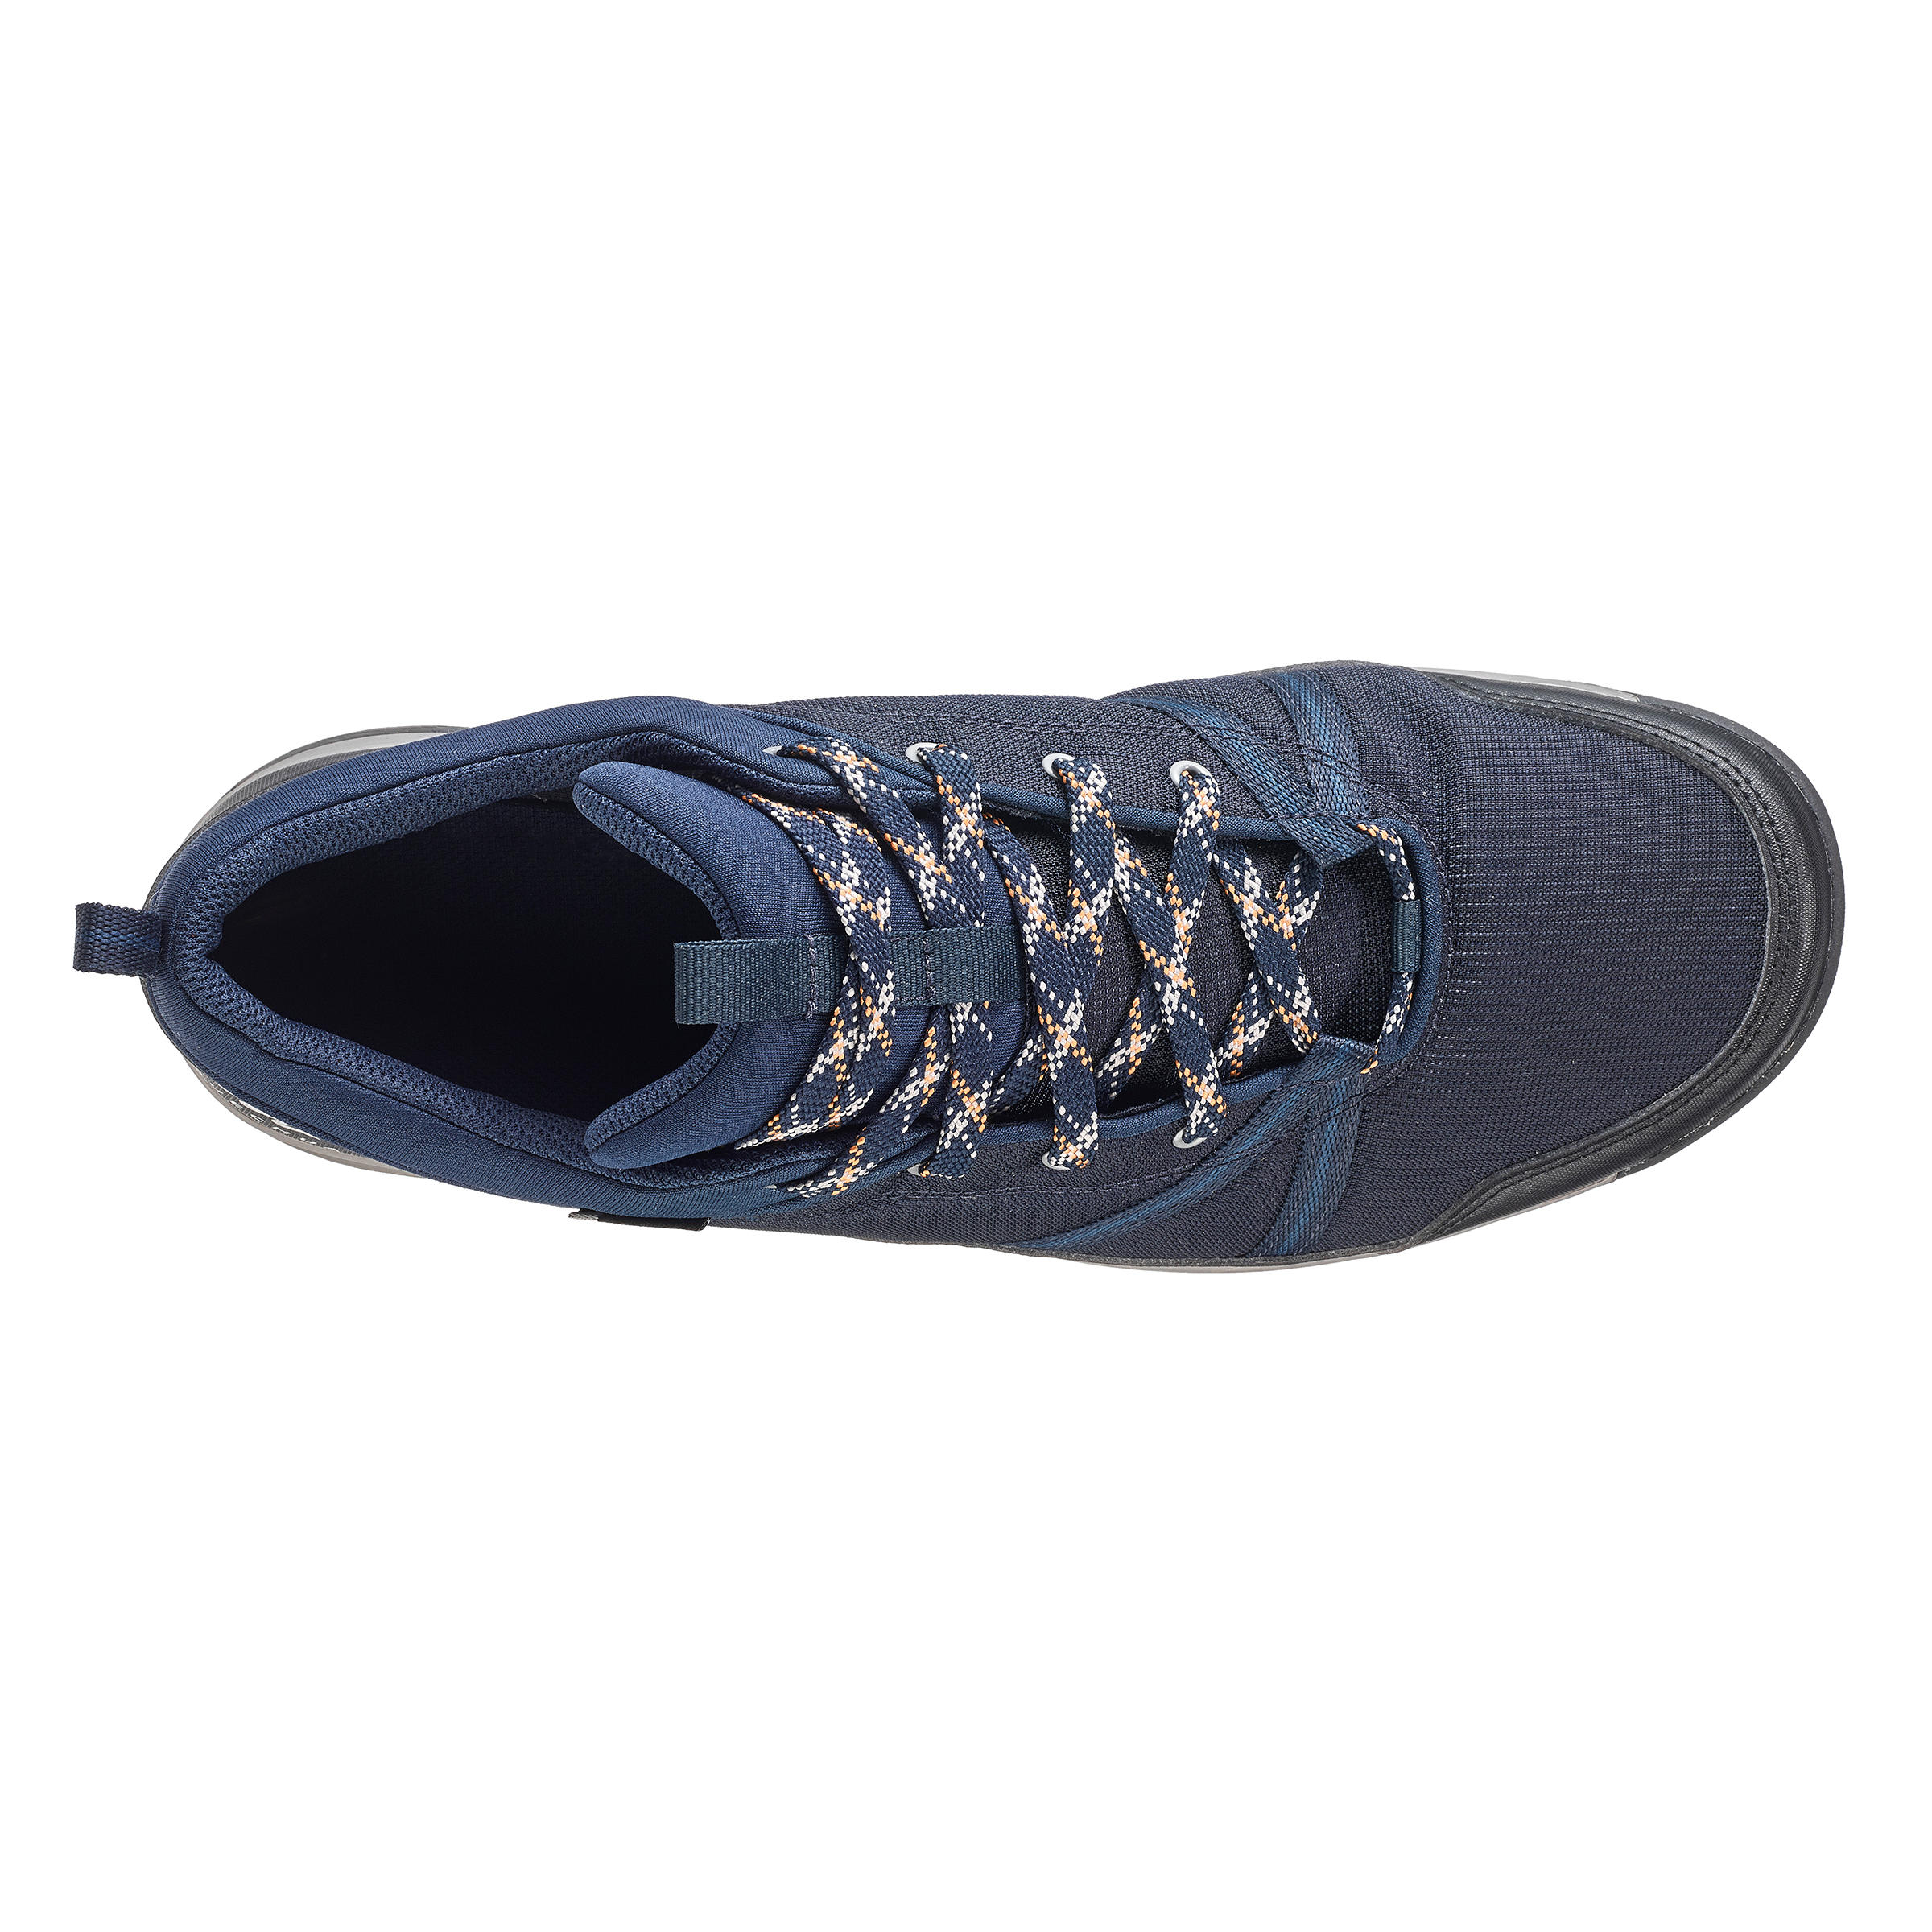 Men’s Waterproof Hiking Shoes  NH150 WP blue - QUECHUA